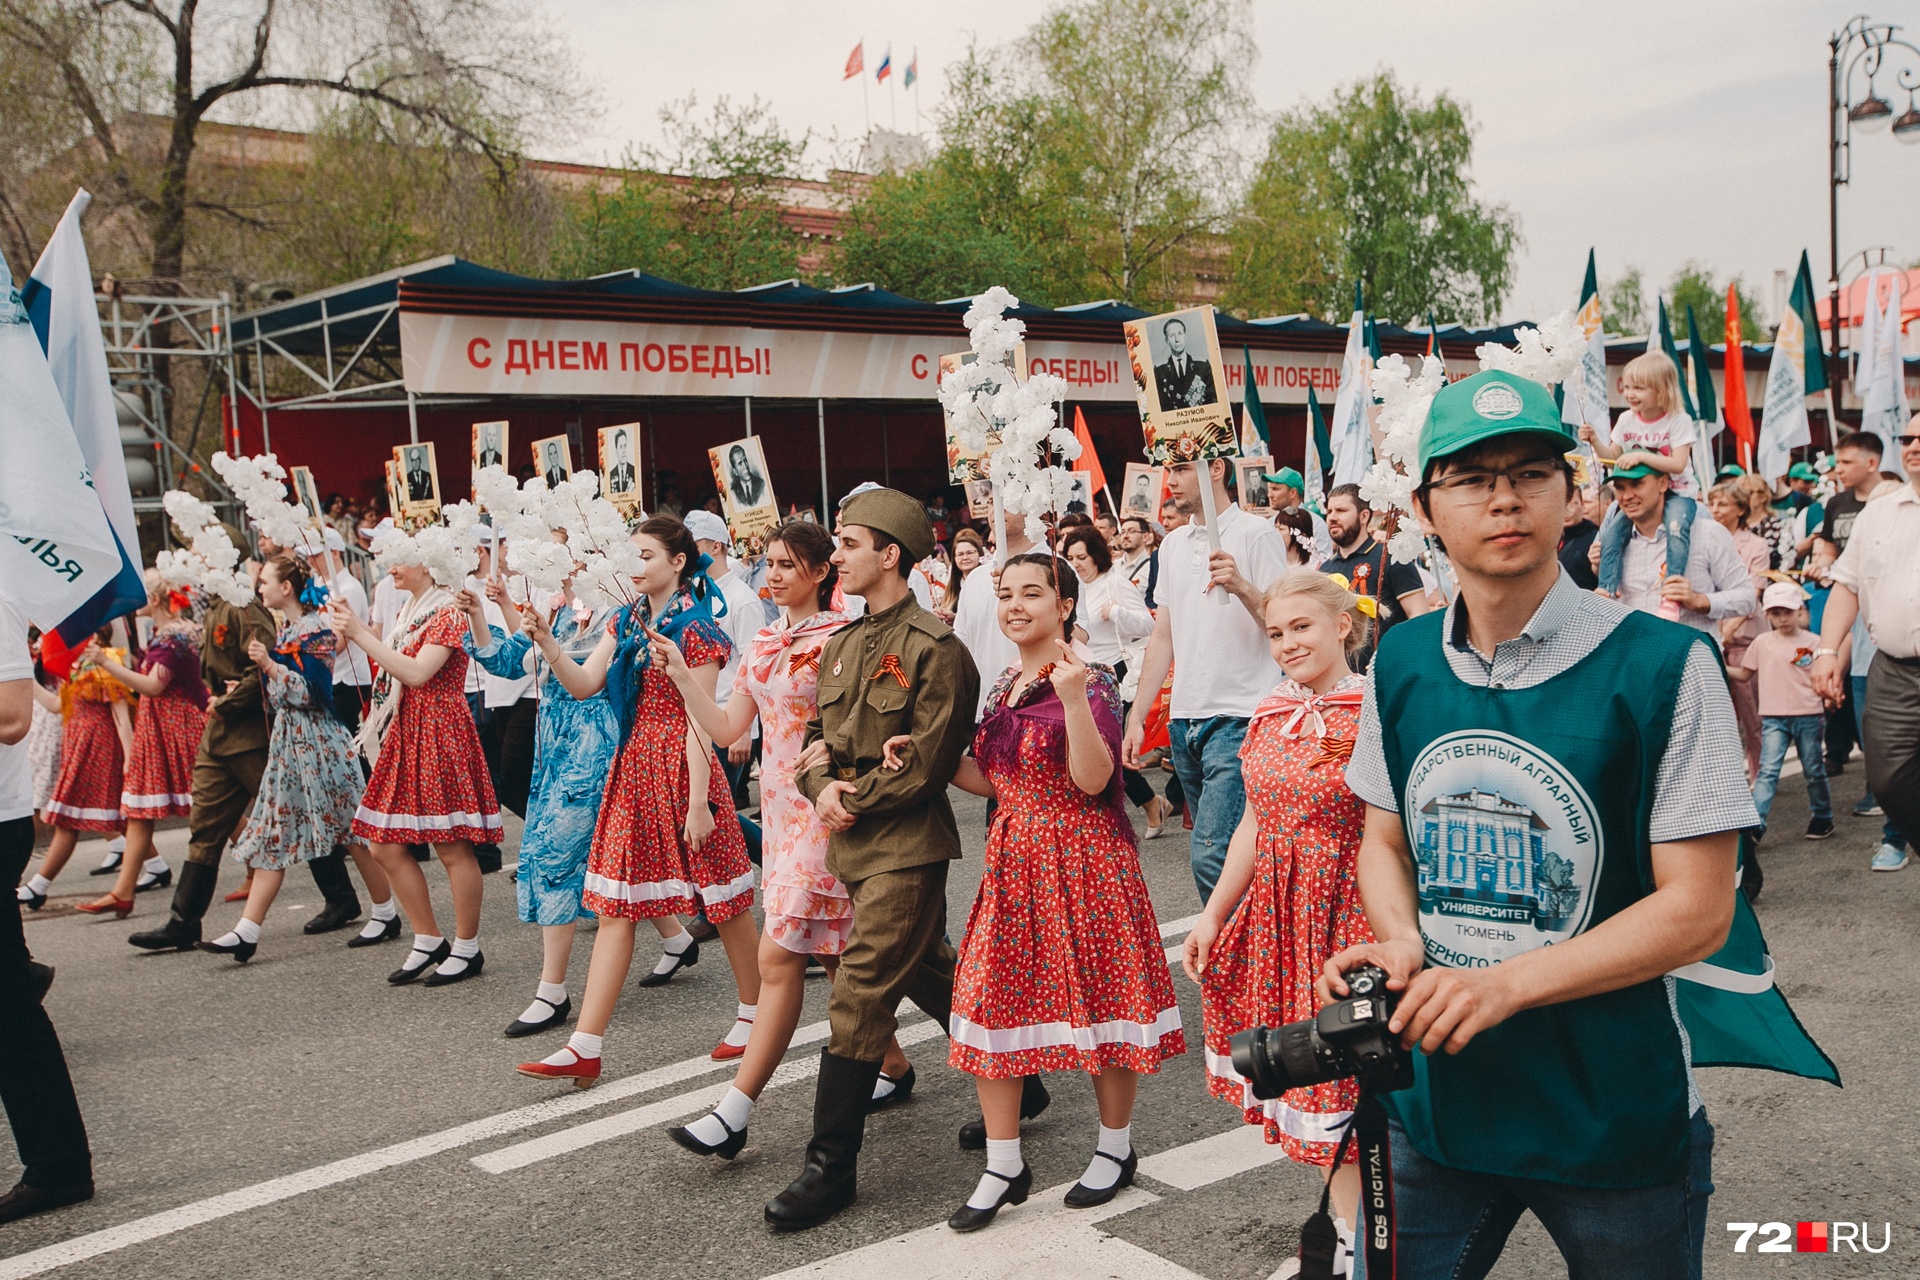 Примерно в таких нарядах шагали девушки на самом первом параде в честь победы в Великой Отечественной войне